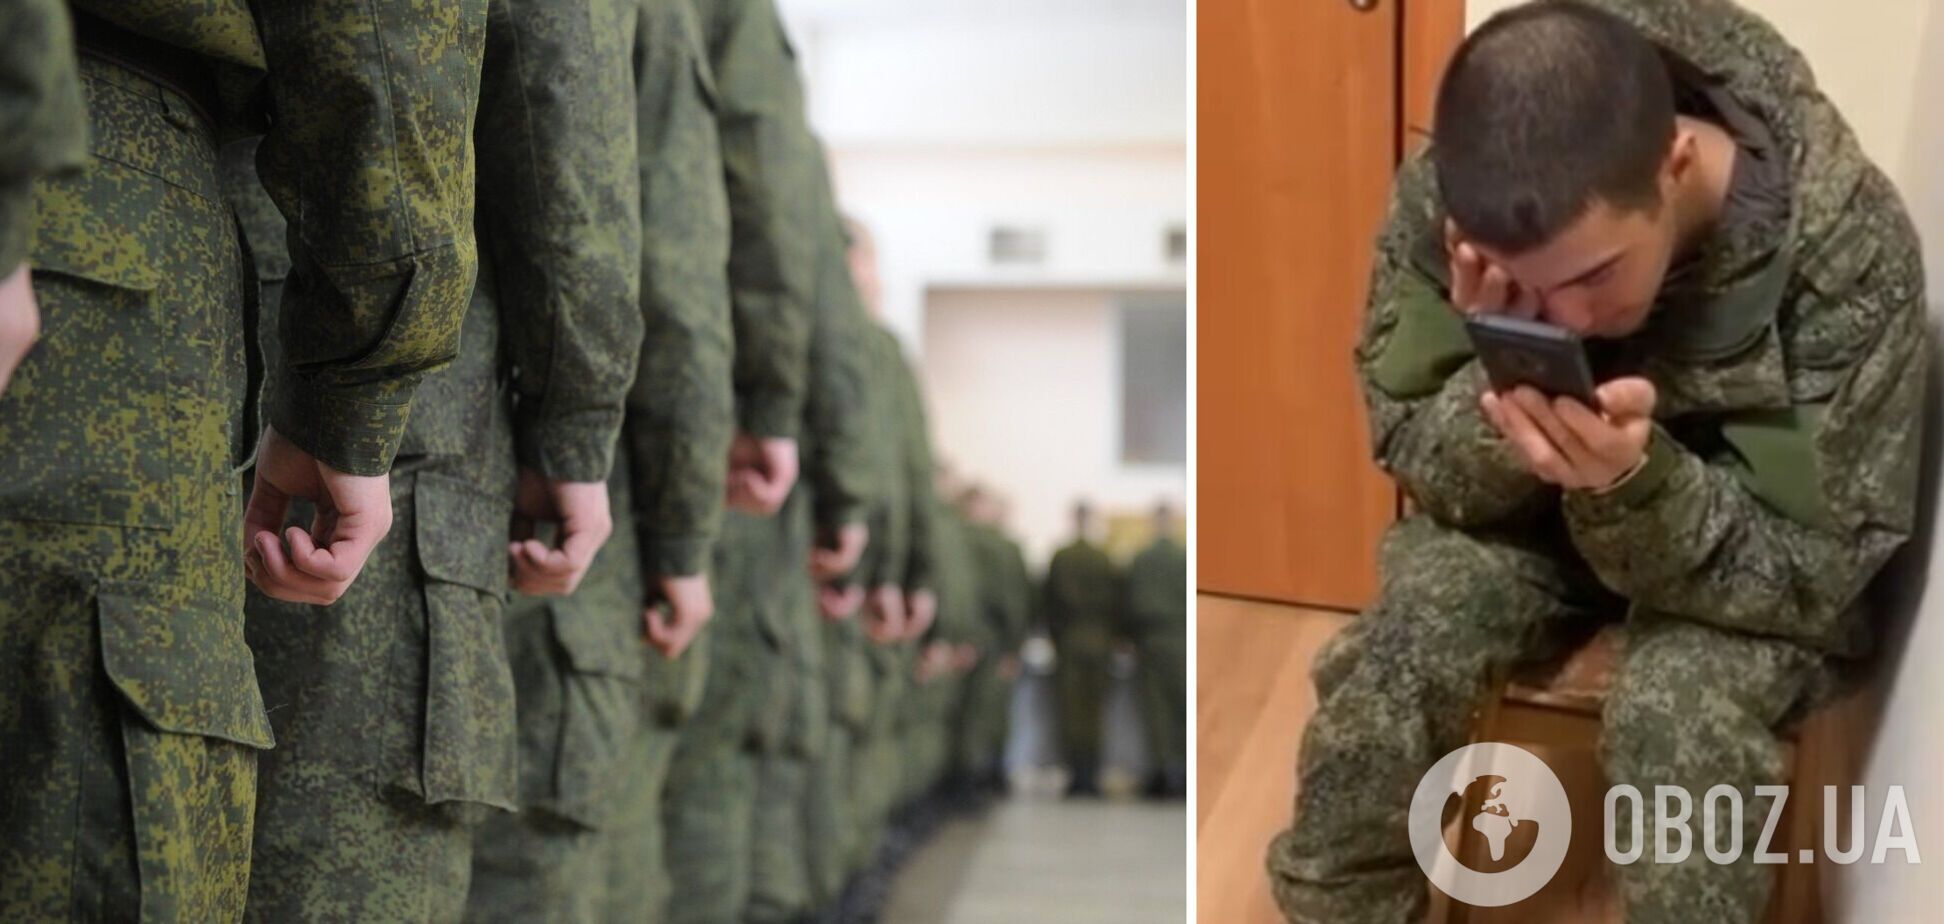 'Почти всех убили, меня не бьют и кормят': пленные оккупанты позвонили родным в Россию. Видео